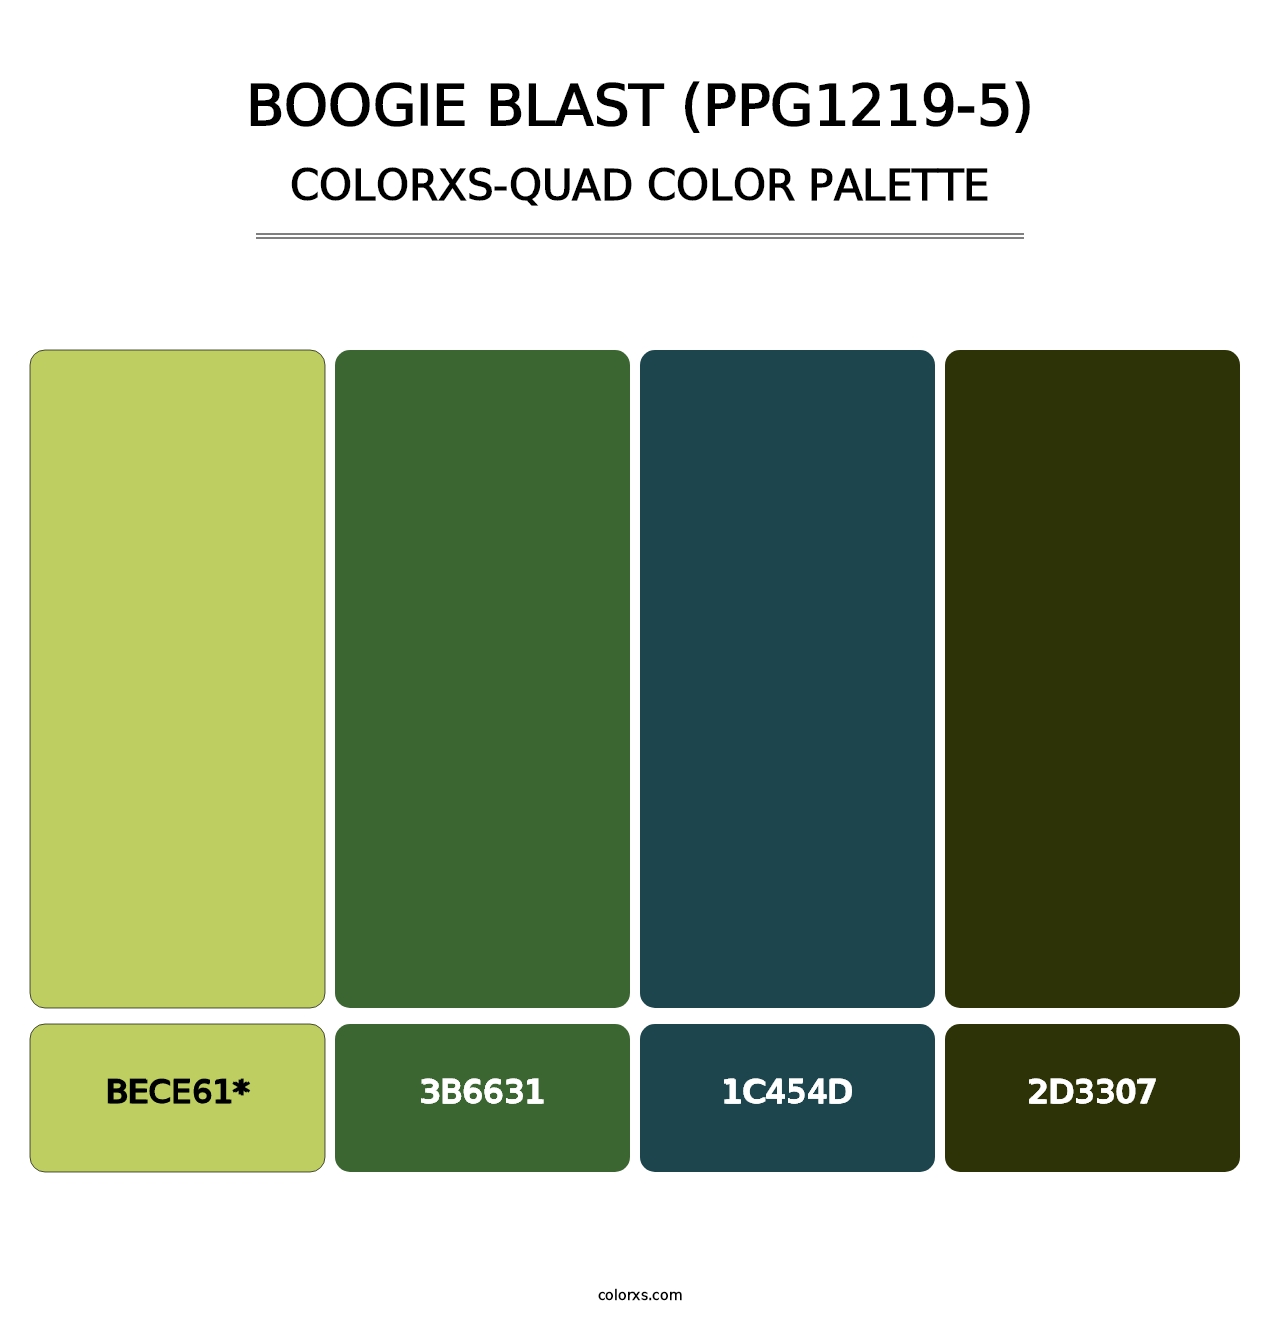 Boogie Blast (PPG1219-5) - Colorxs Quad Palette